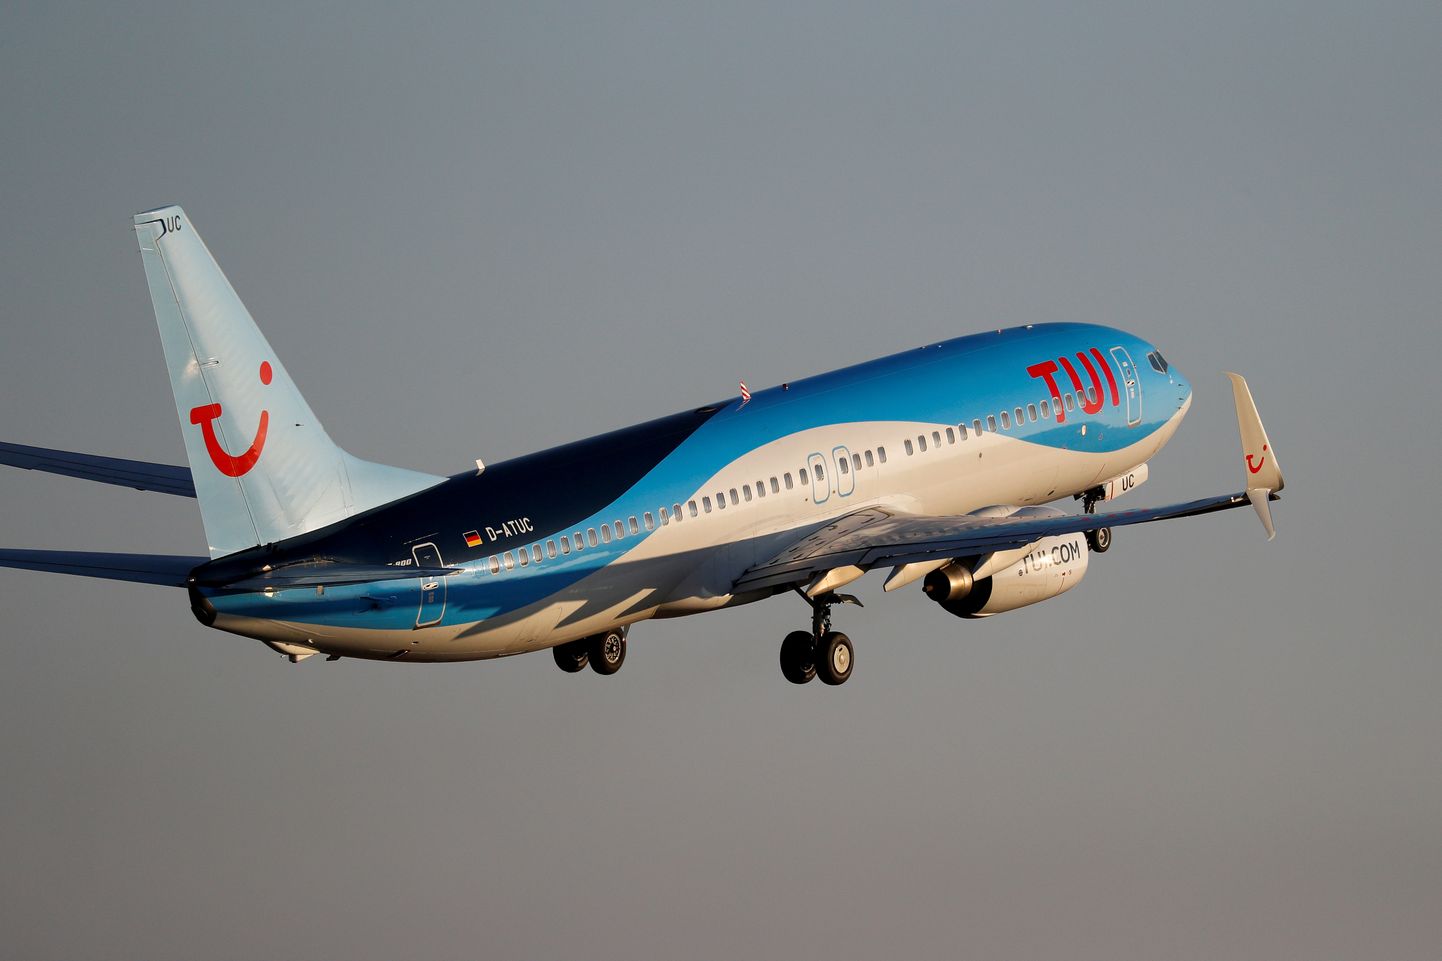 Reisifirma TUI fly Boeing 737-800 startimas Palma de Mallorcalt Hispaanias.